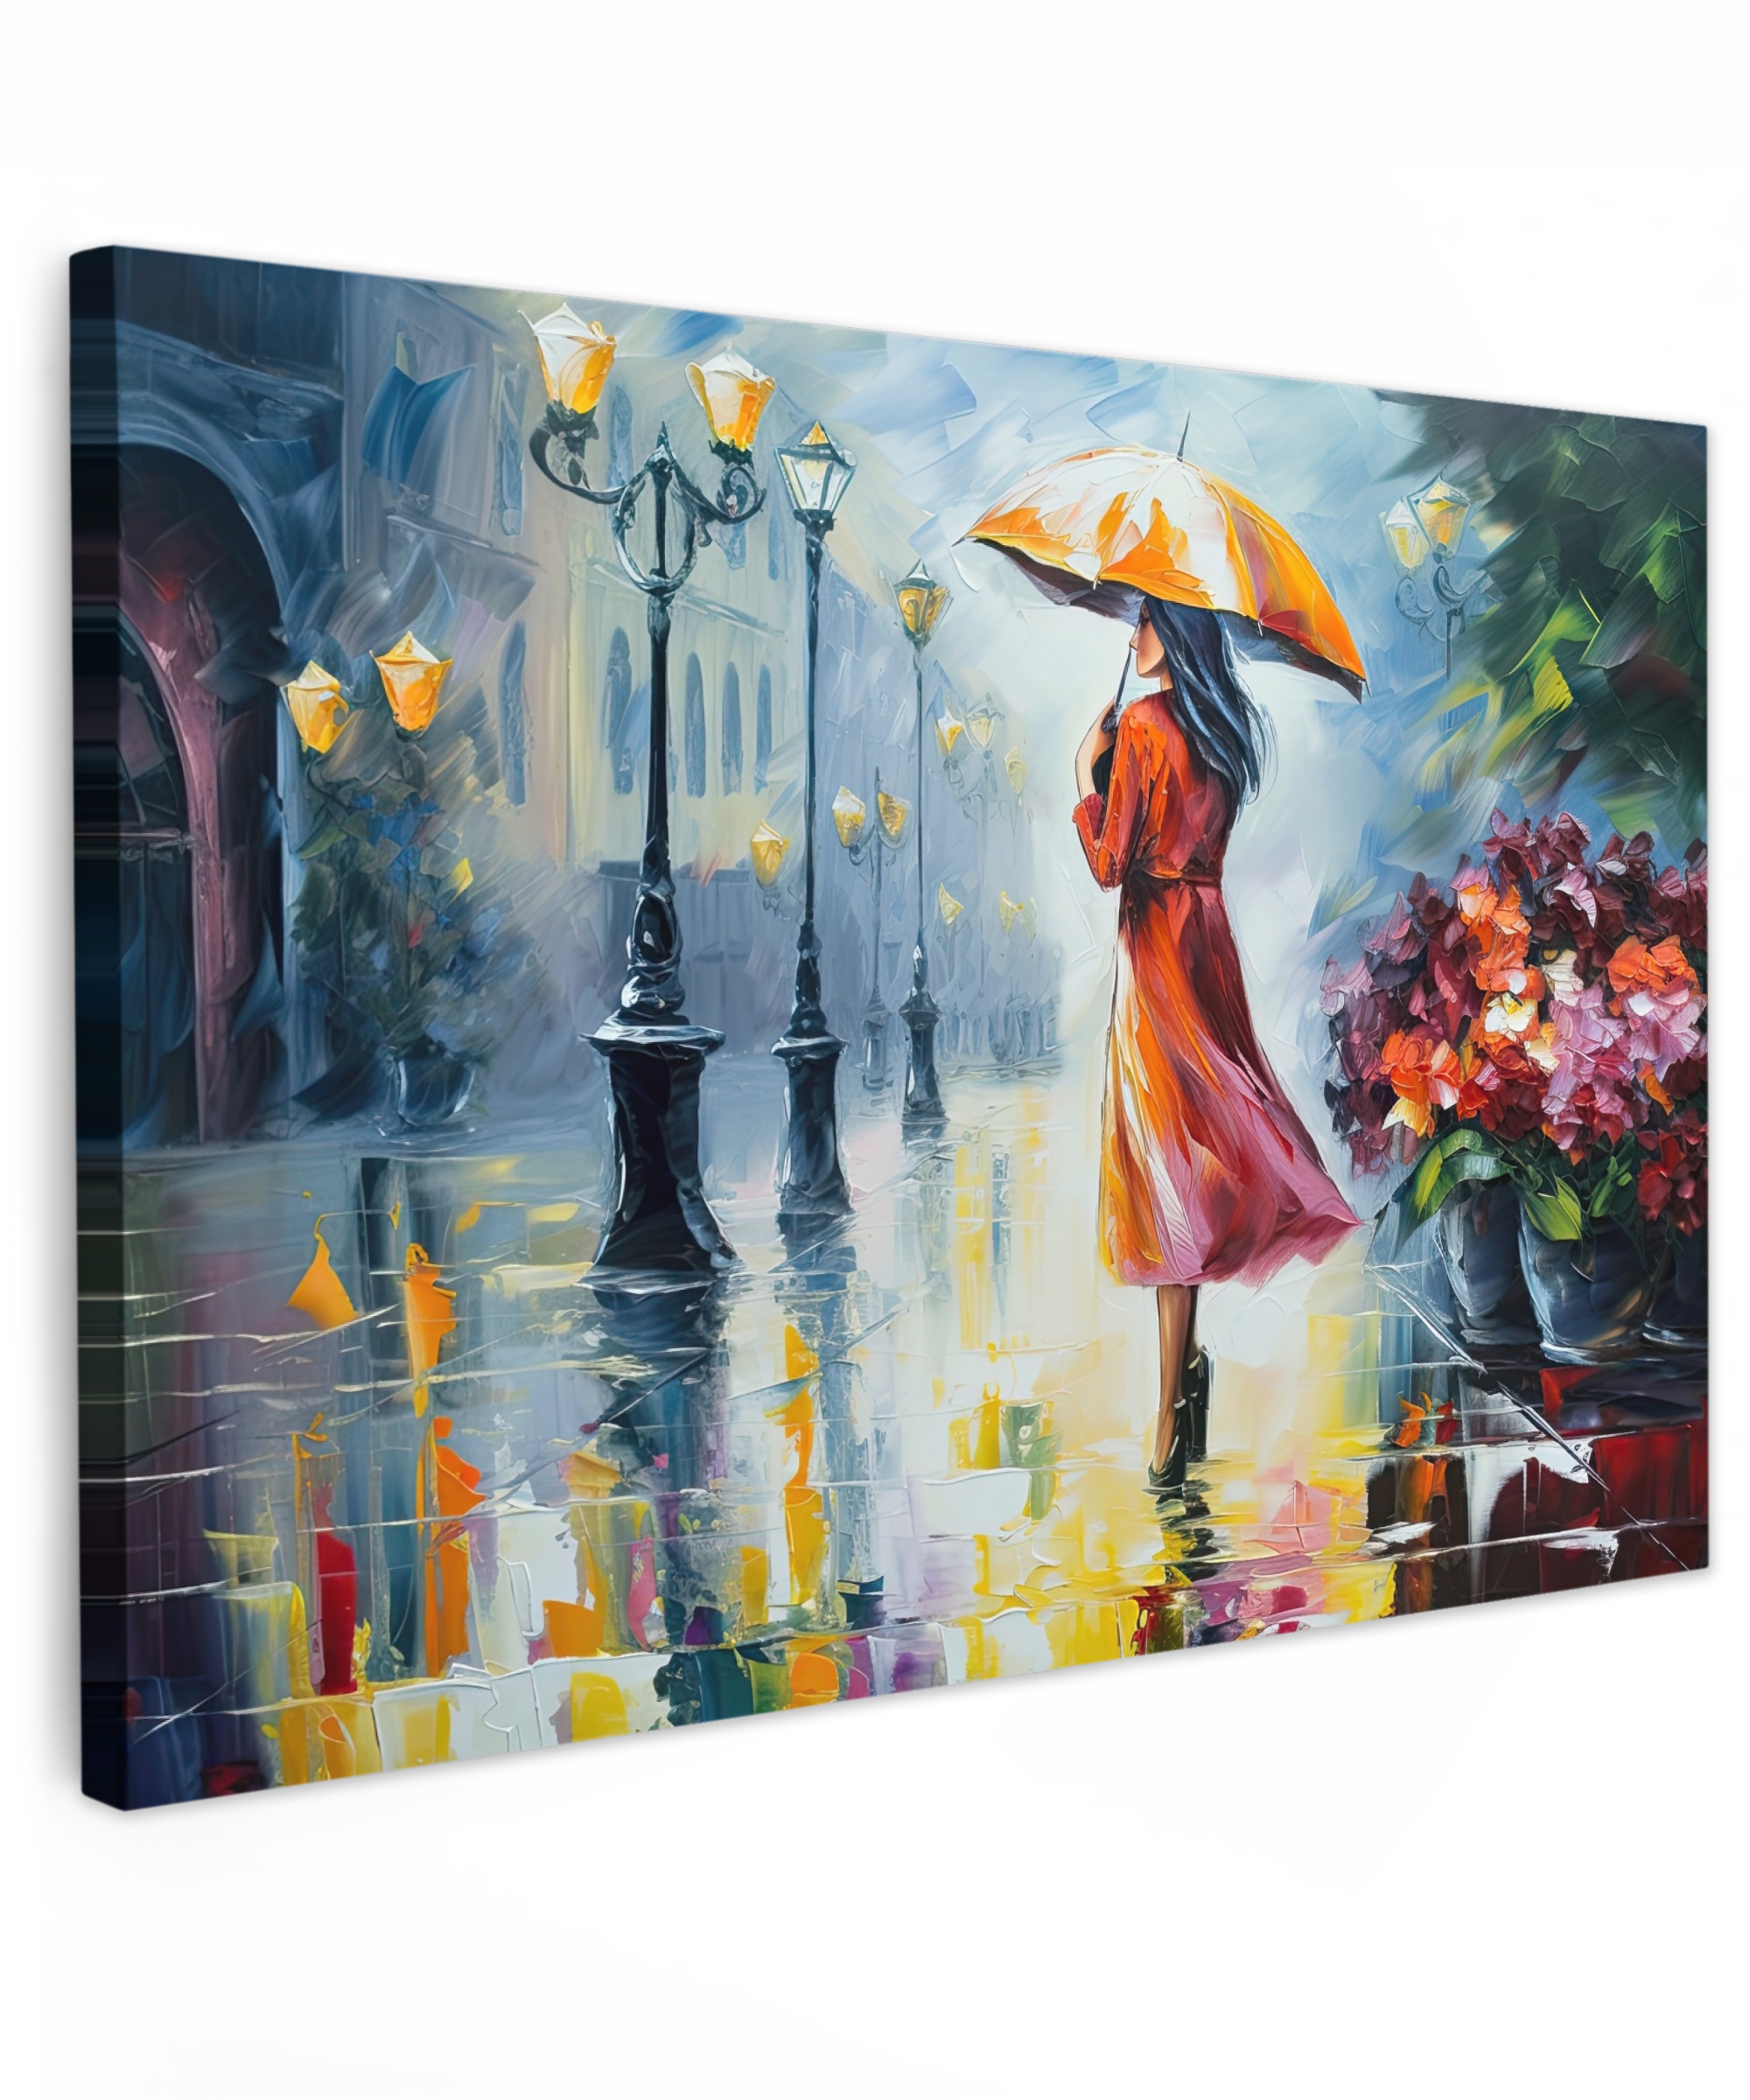 Tableau sur toile - Peinture à l'huile - Parapluie - Femme - Rue - Art